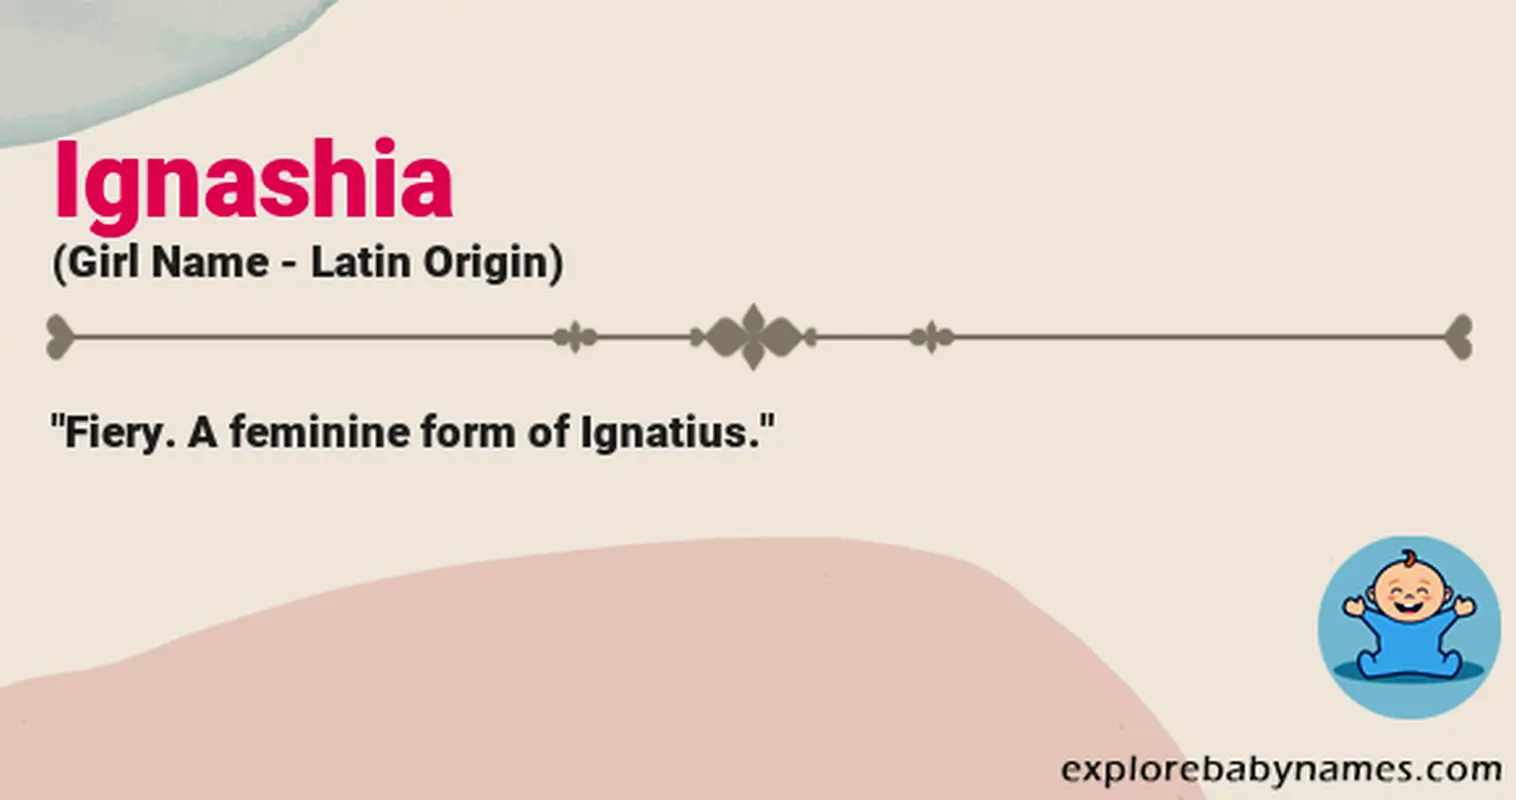 Meaning of Ignashia